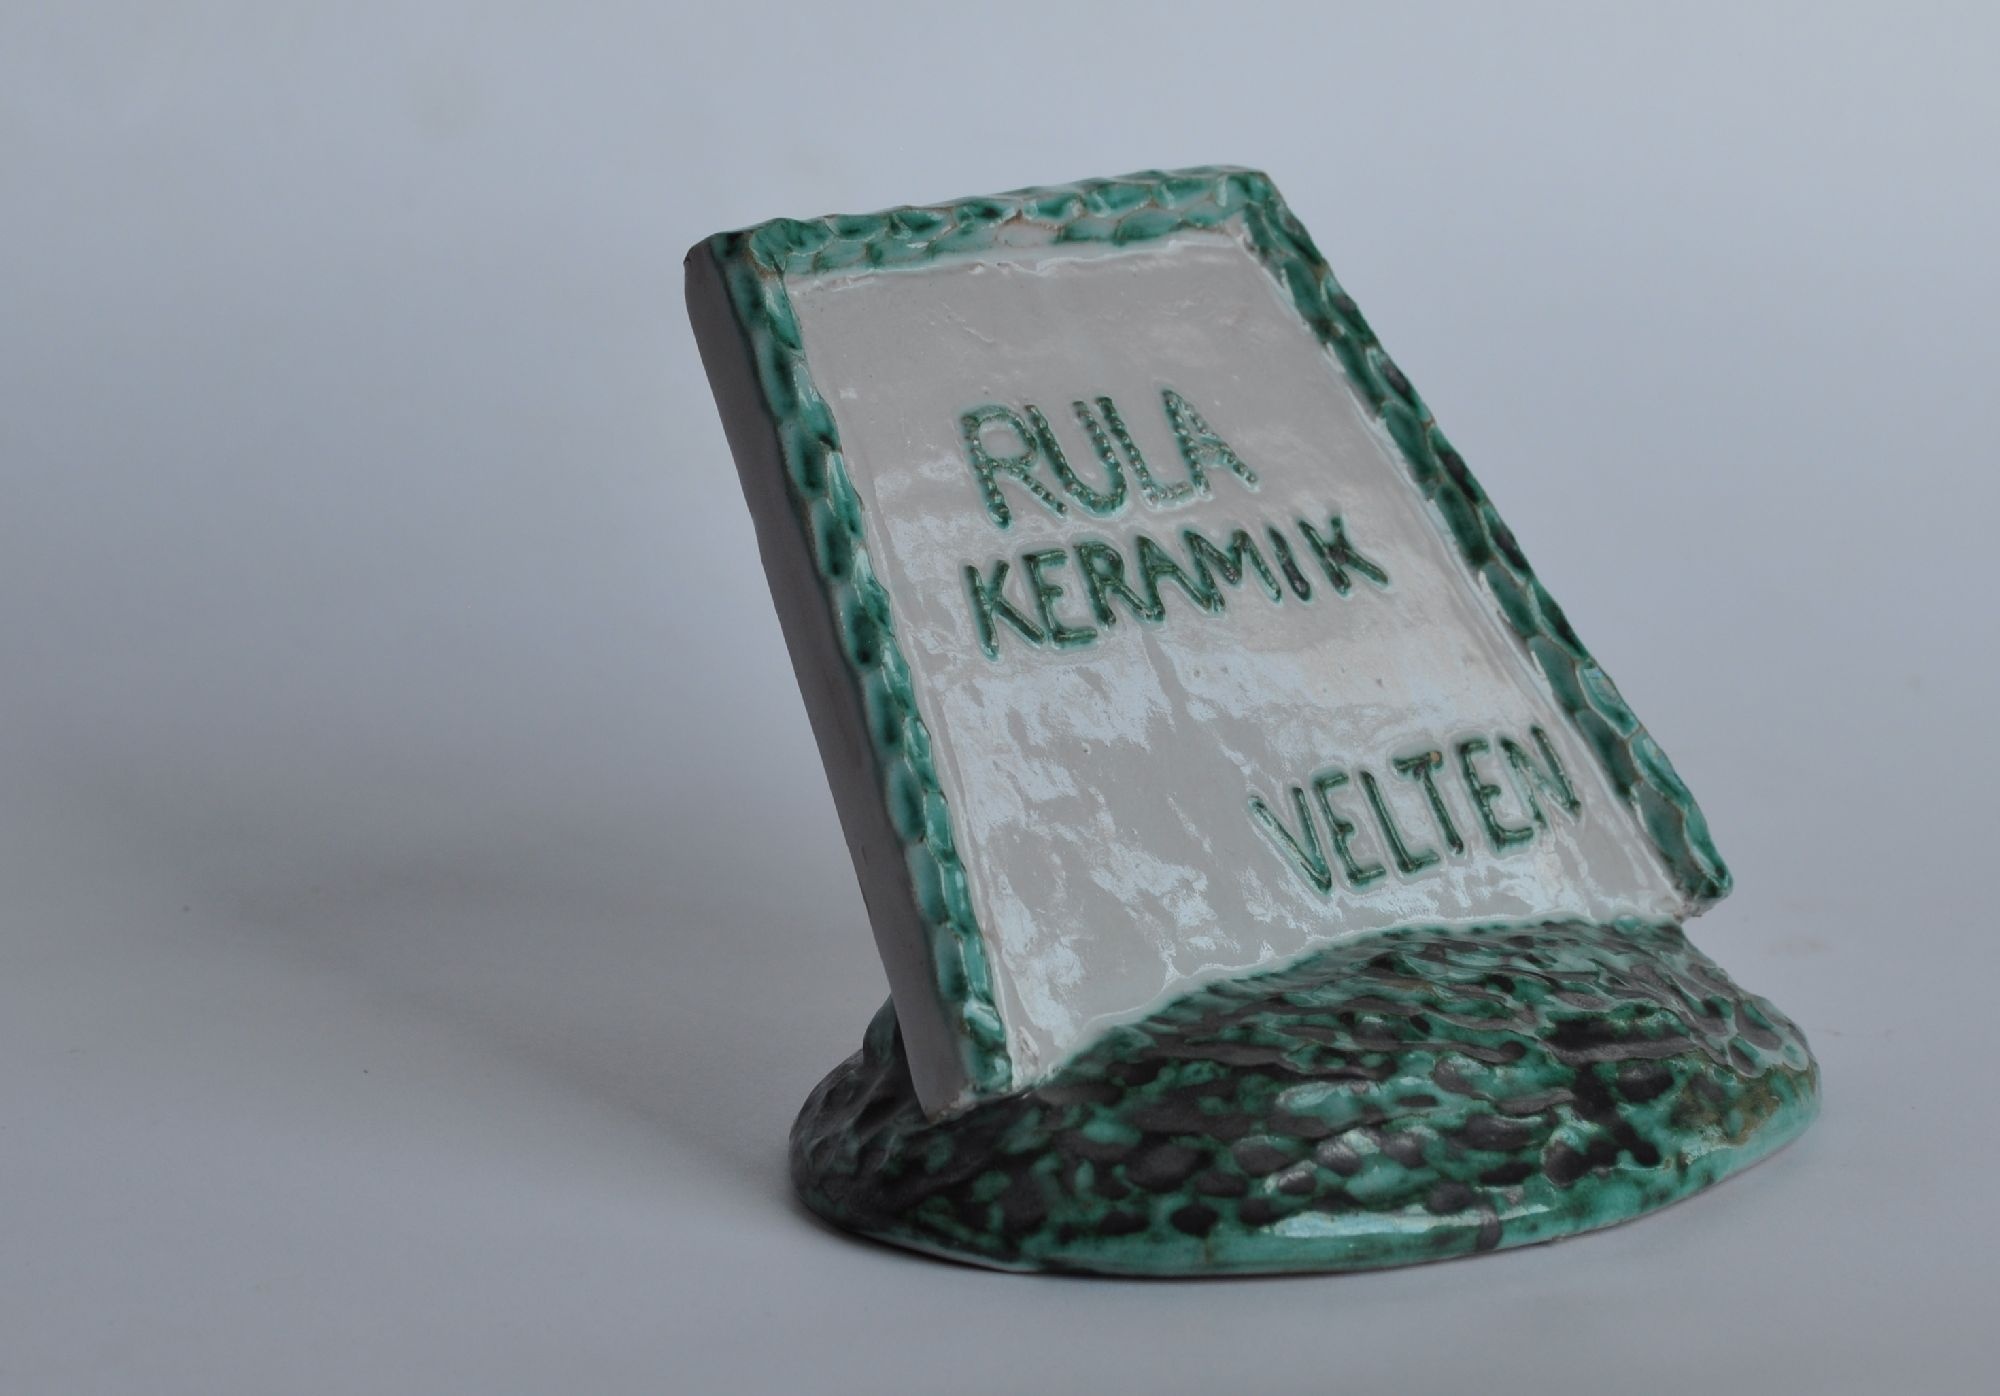 Werbeaufsteller Rula-Keramik (Ofen- und Keramikmuseum Velten CC BY-NC-SA)